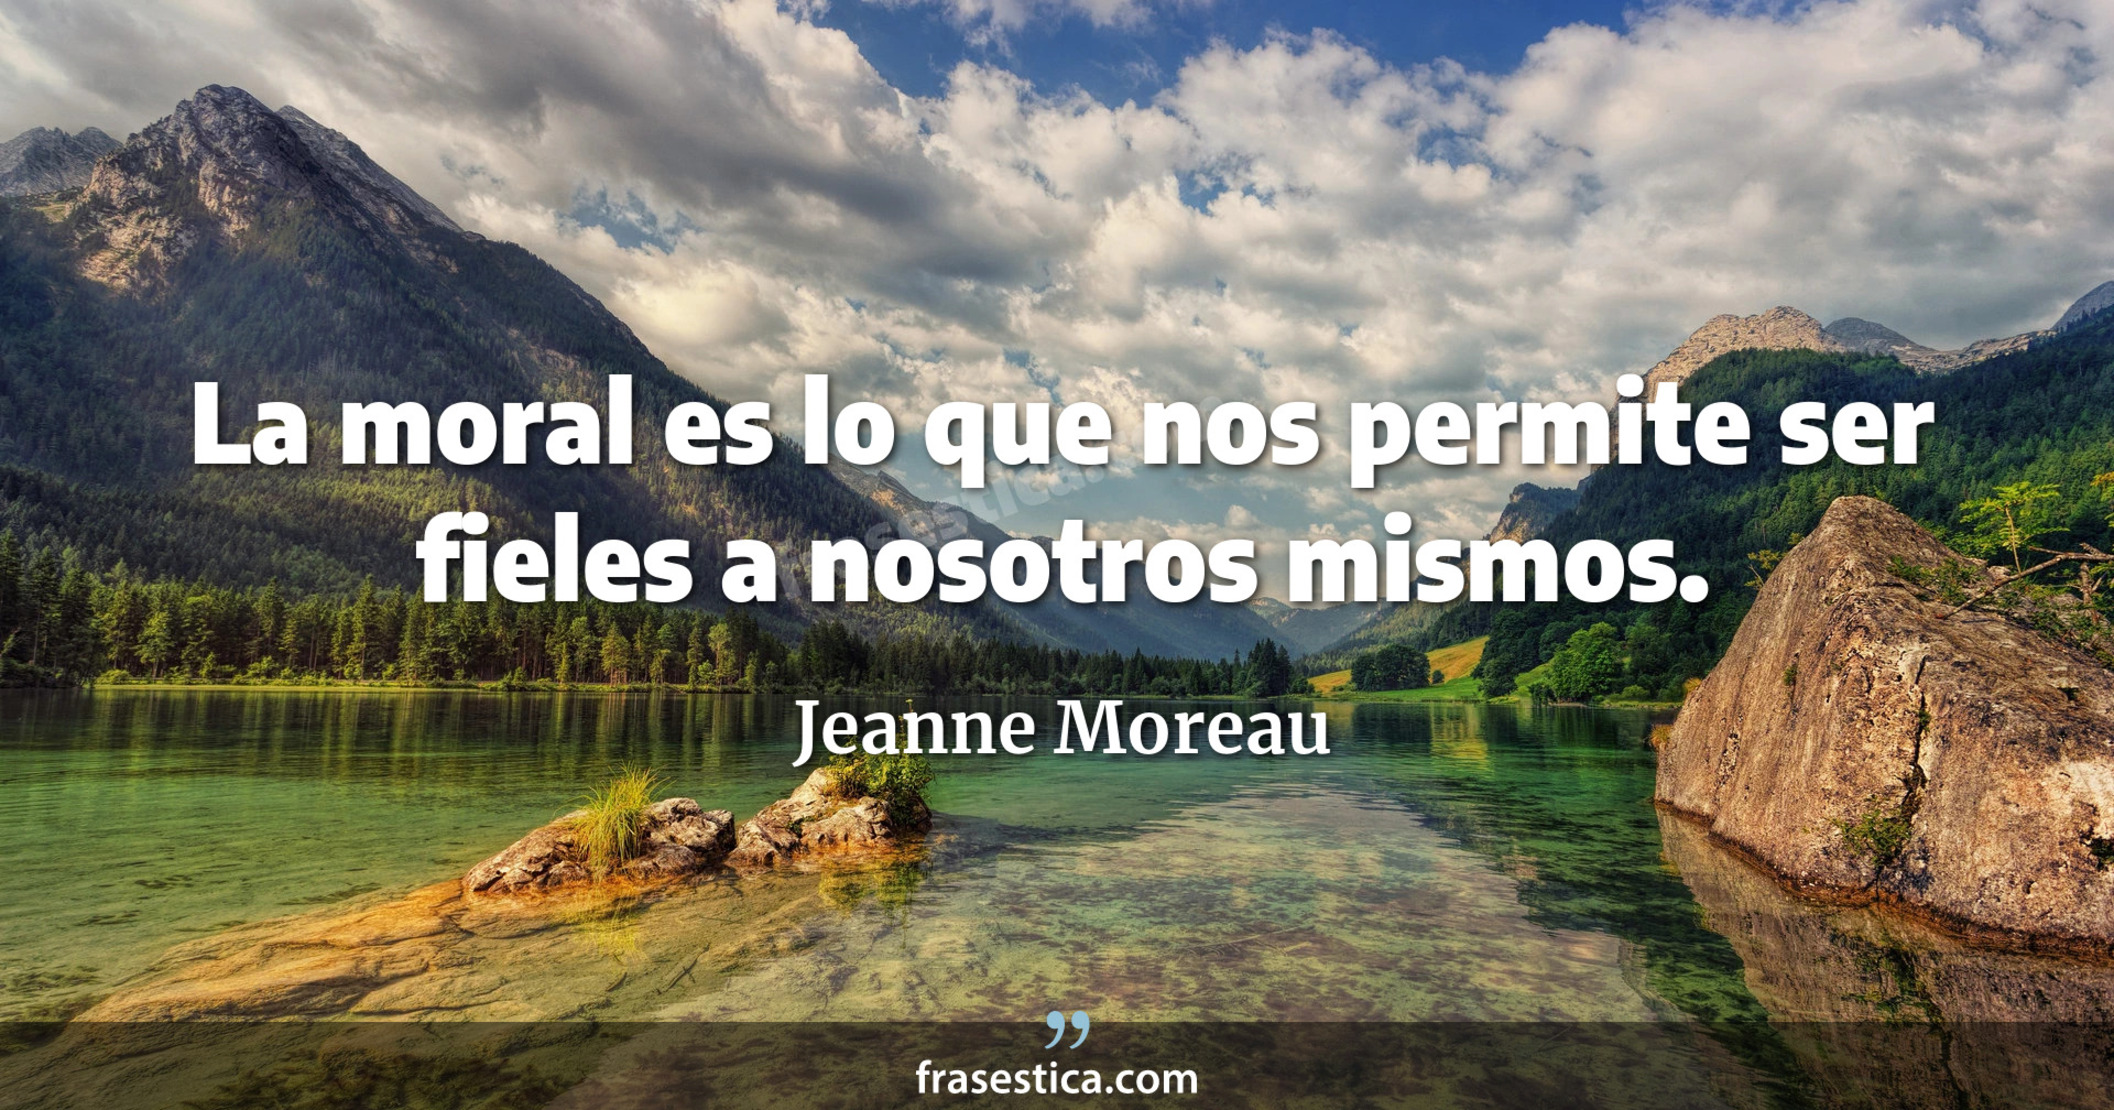 La moral es lo que nos permite ser fieles a nosotros mismos. - Jeanne Moreau